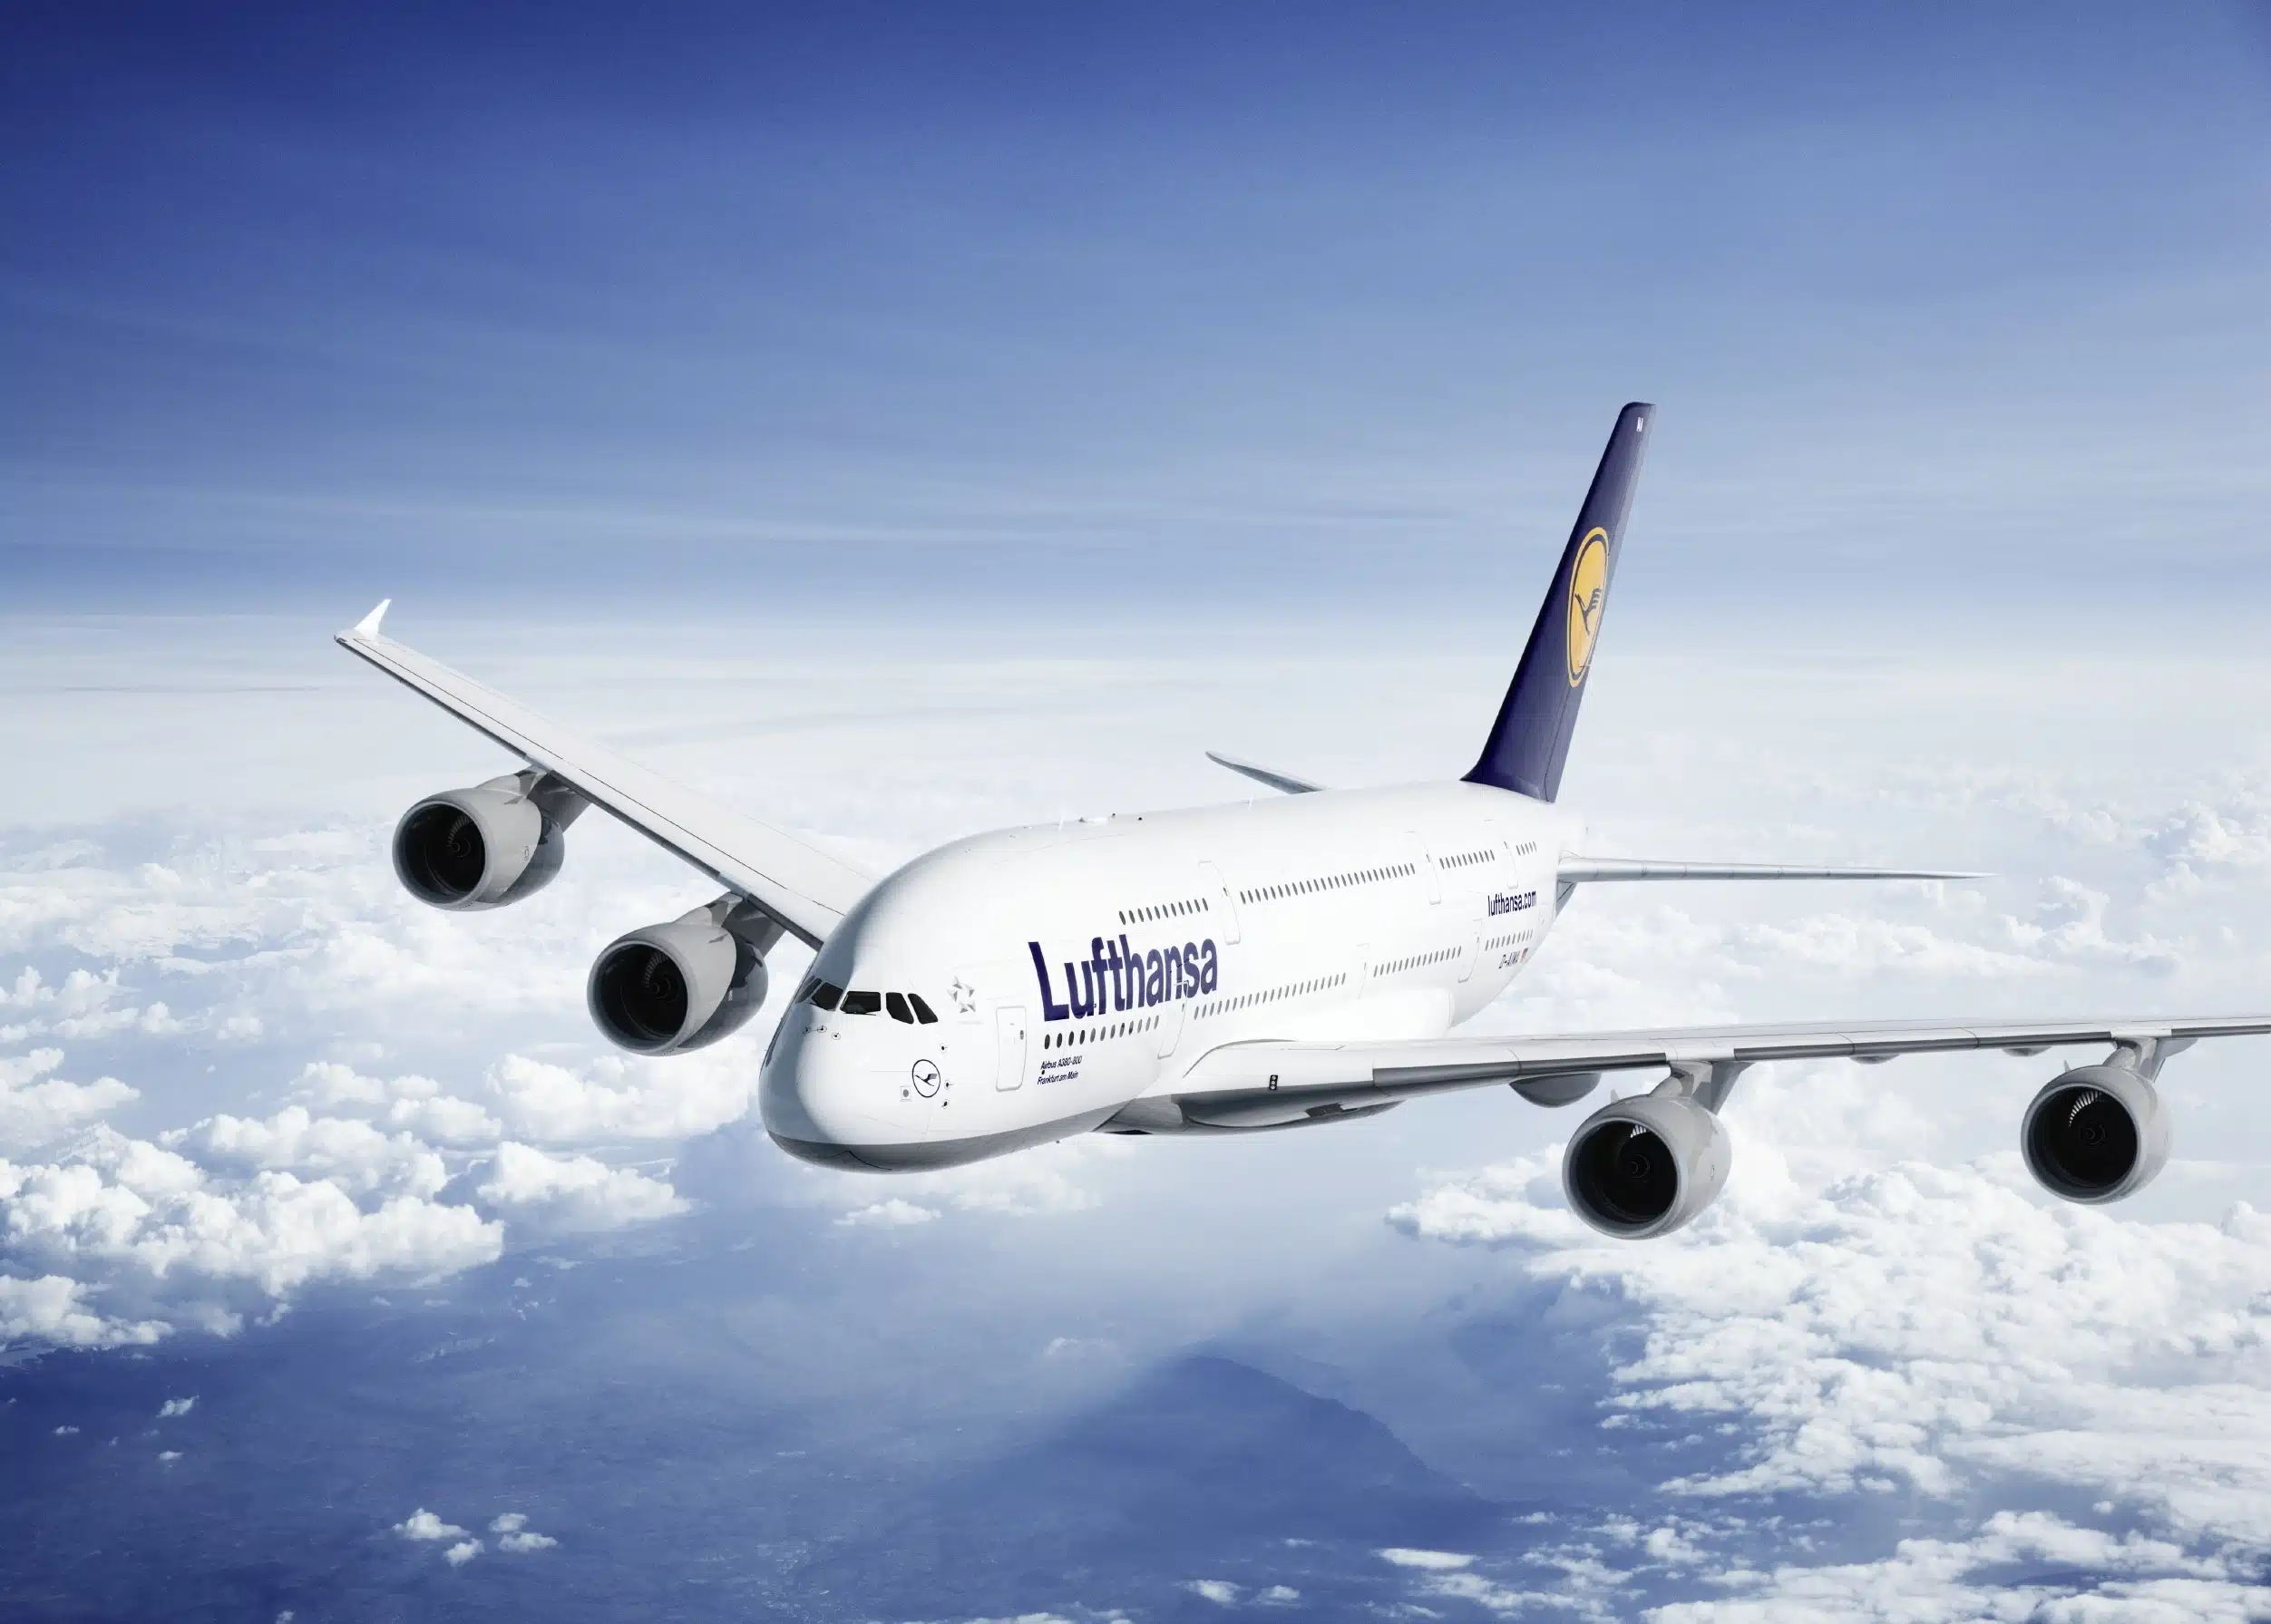 Lufthansa tendrá que pagar hasta 600 euros a los afectados por el fallo informático, más gastos derivados del retraso